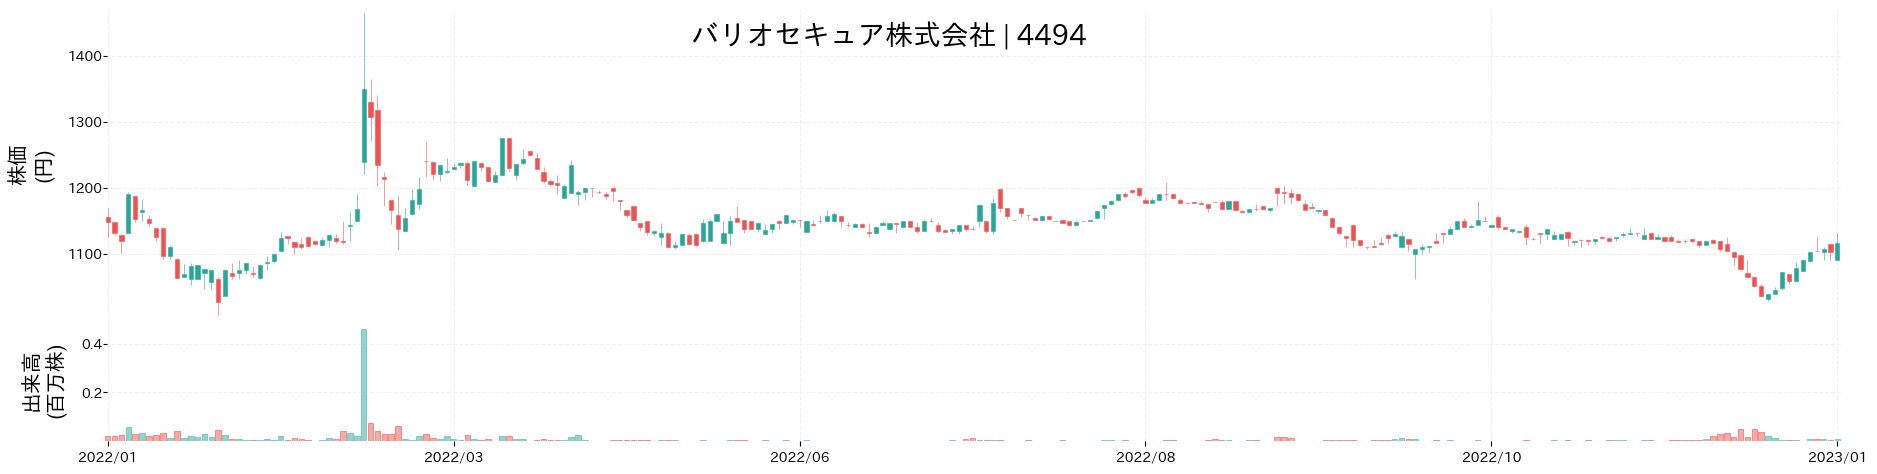 バリオセキュアの株価推移(2022)